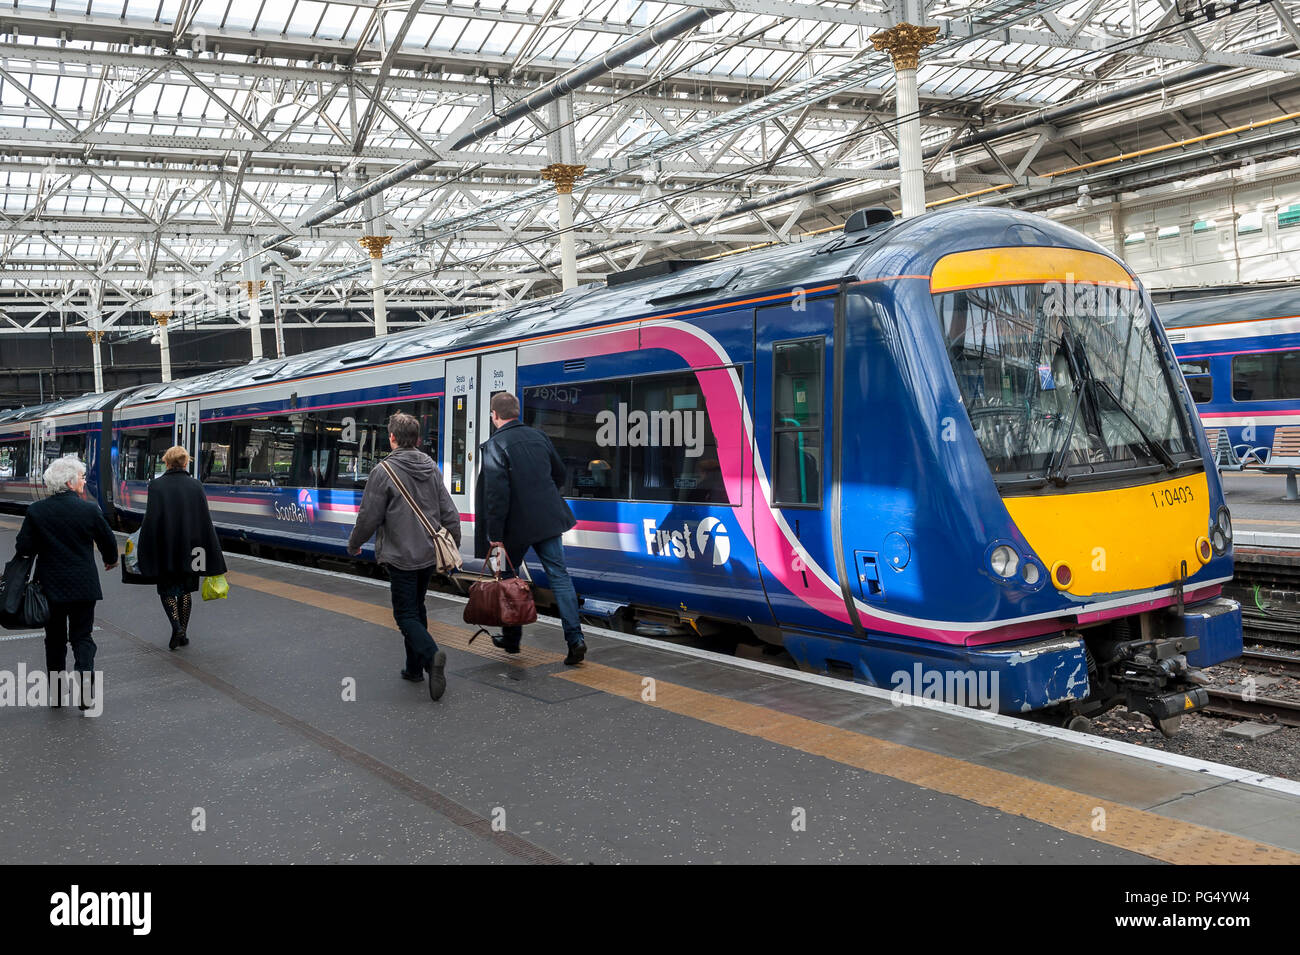 ScotRail class 170 Turbostar train de passagers en attente dans une gare ferroviaire au Royaume-Uni. Banque D'Images